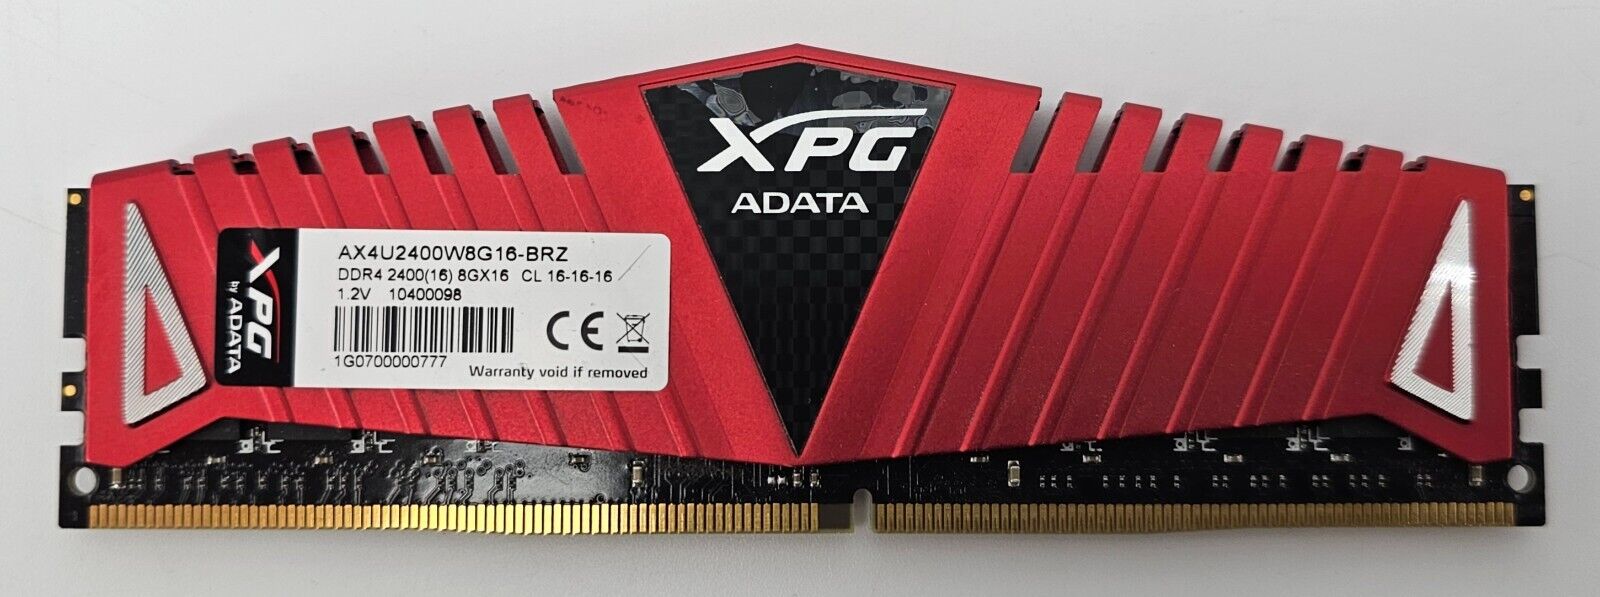 A-DATA XPG 8GB DDR4 DIMM PC4-19200 2400MHZ 288-PIN MEMORY AX4U2400W8G-16-BRZ